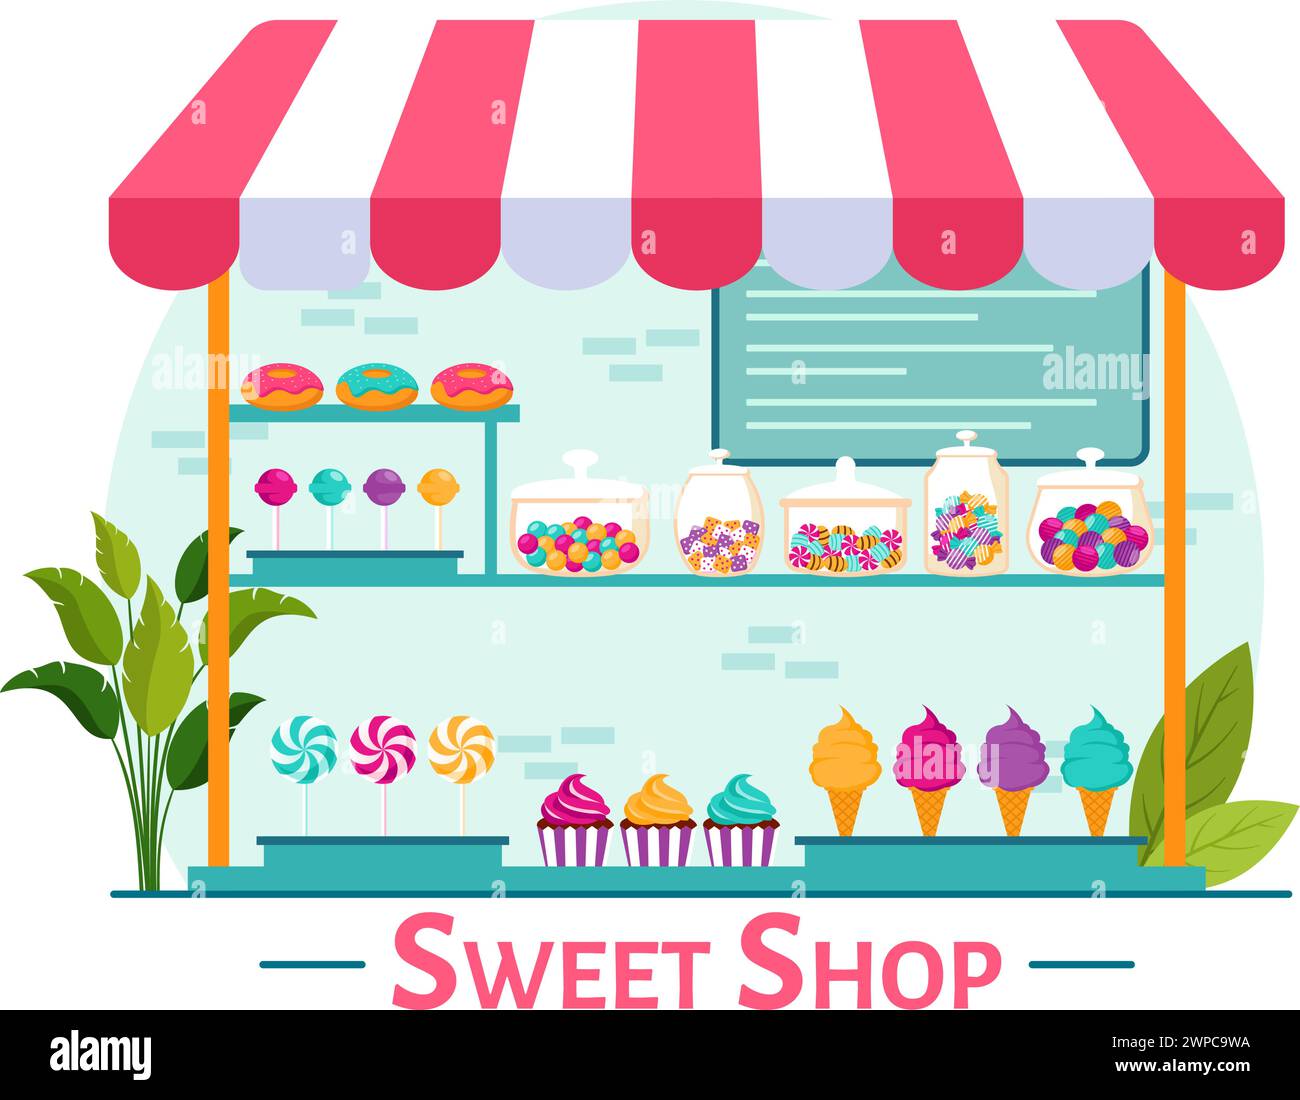 Illustration vectorielle Sweet Shop avec la vente de divers produits de boulangerie, Cupcake, gâteau, pâtisserie ou bonbons dans la conception de fond de dessin animé plat Illustration de Vecteur